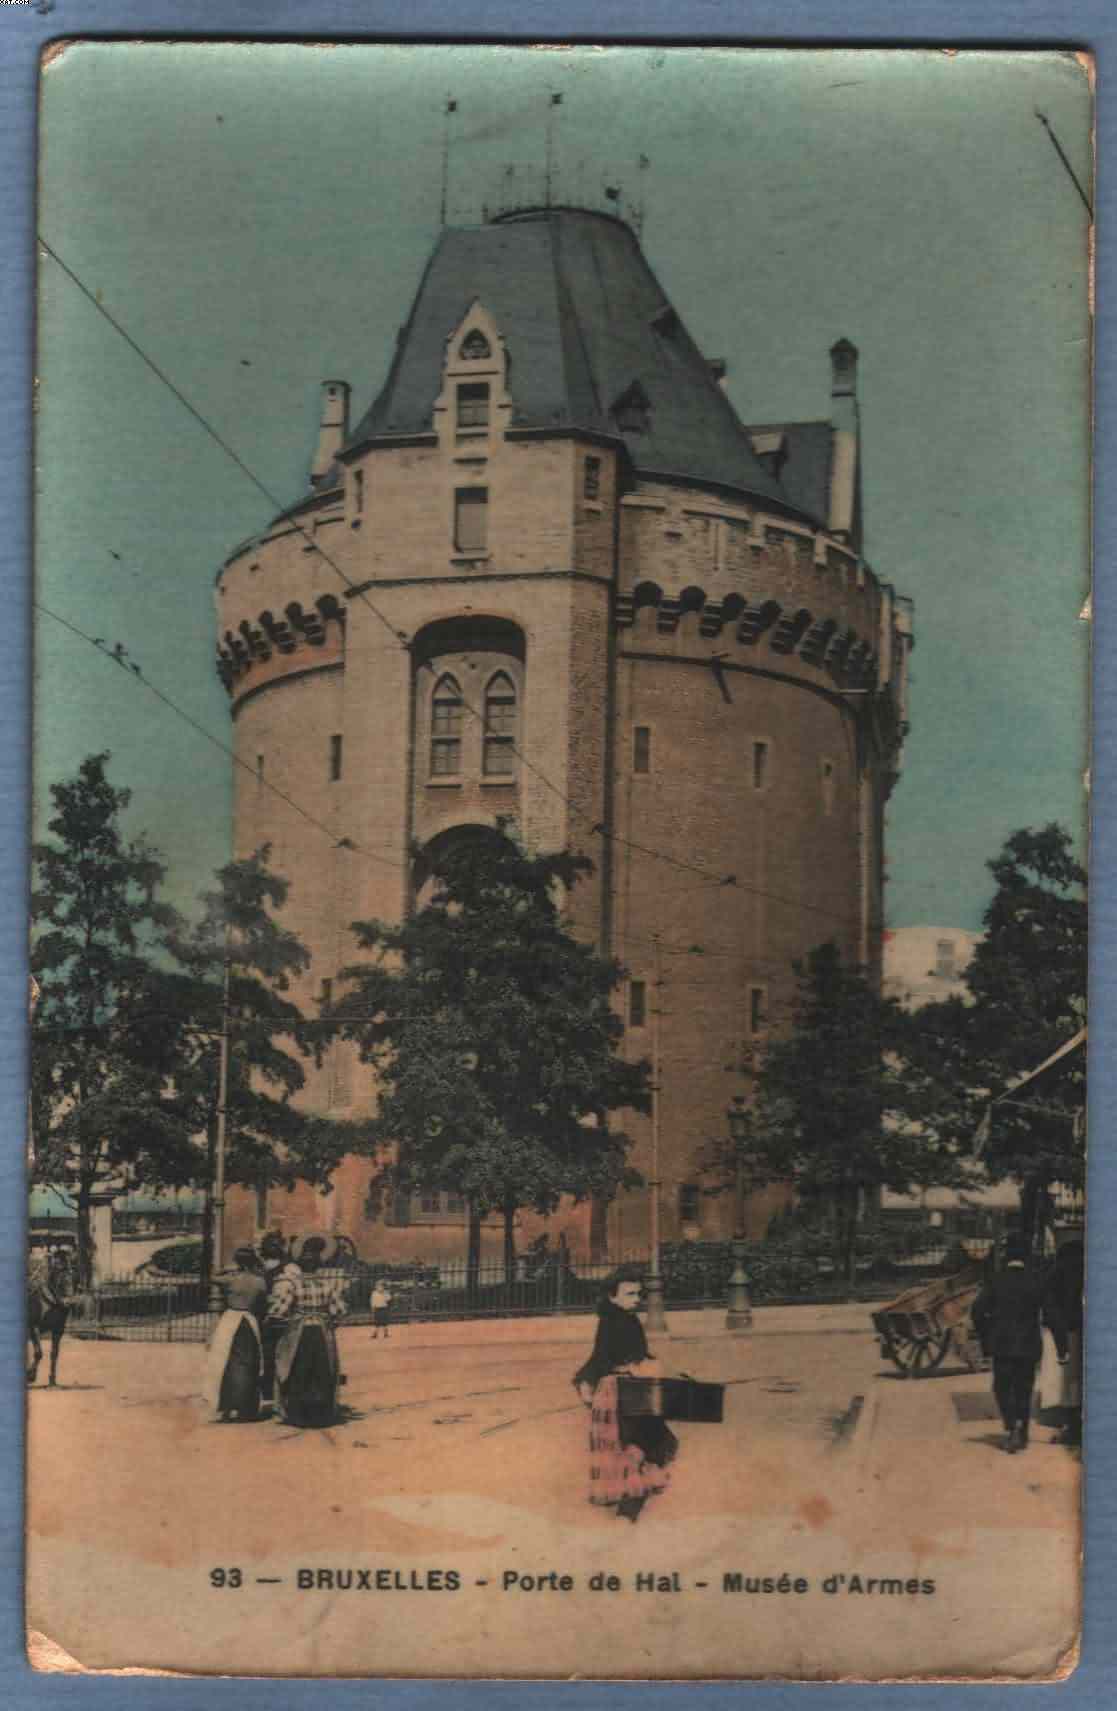 * BRUXELLES - BRUSSEL * (Edition Grand Bazar Anspach Nr. 93) Porte De Hal, Musée D'armes, De Halletoren, Wapenmuseum - Musei